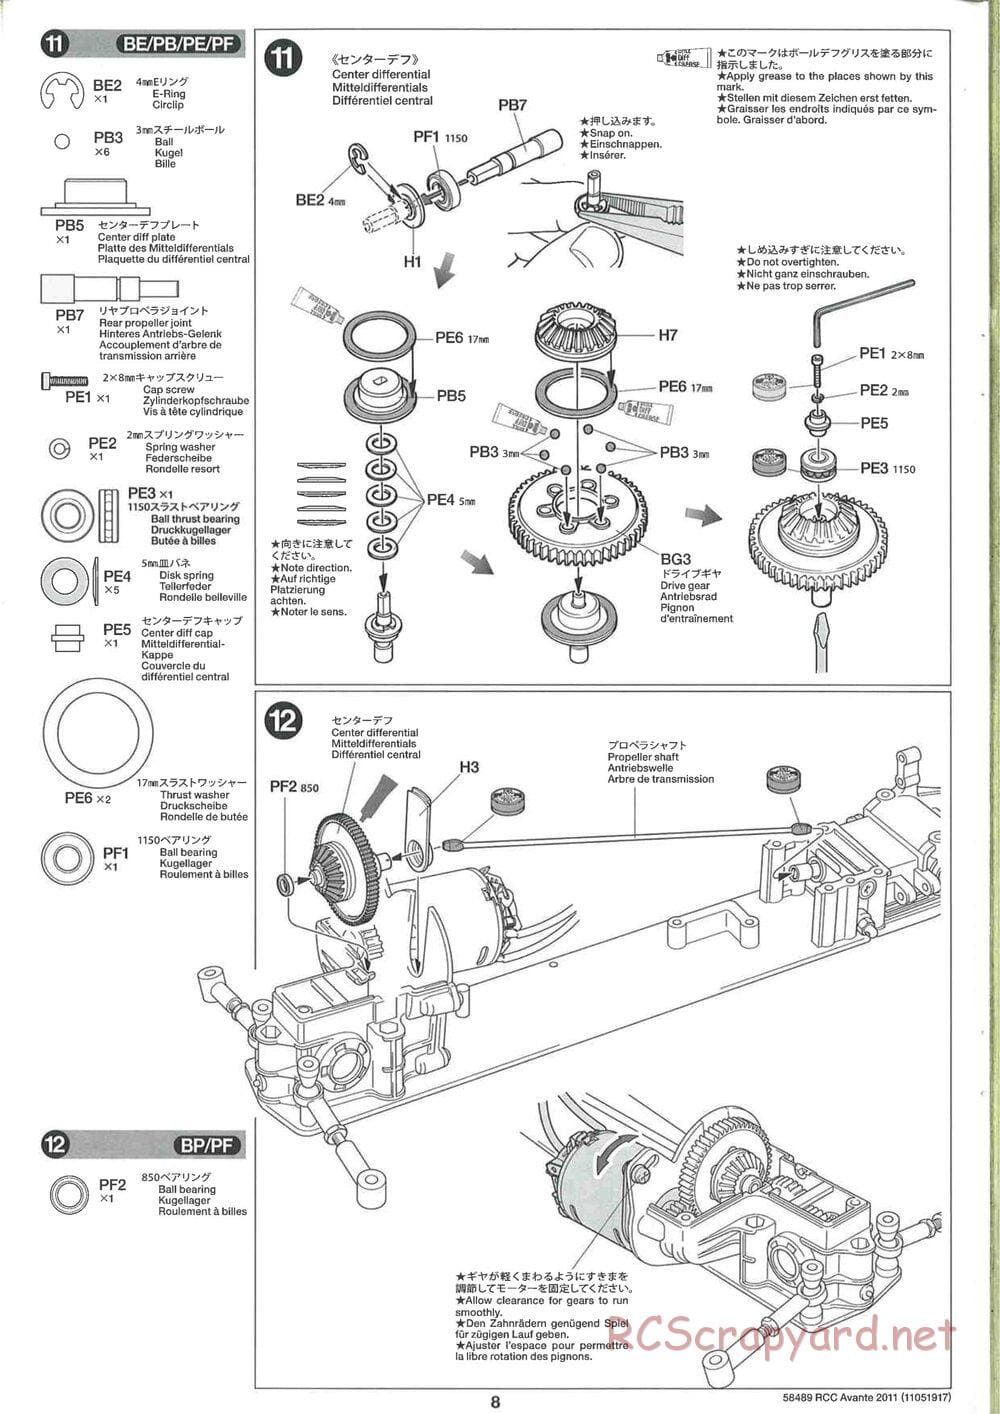 Tamiya - Avante 2011 - AV Chassis - Manual - Page 8